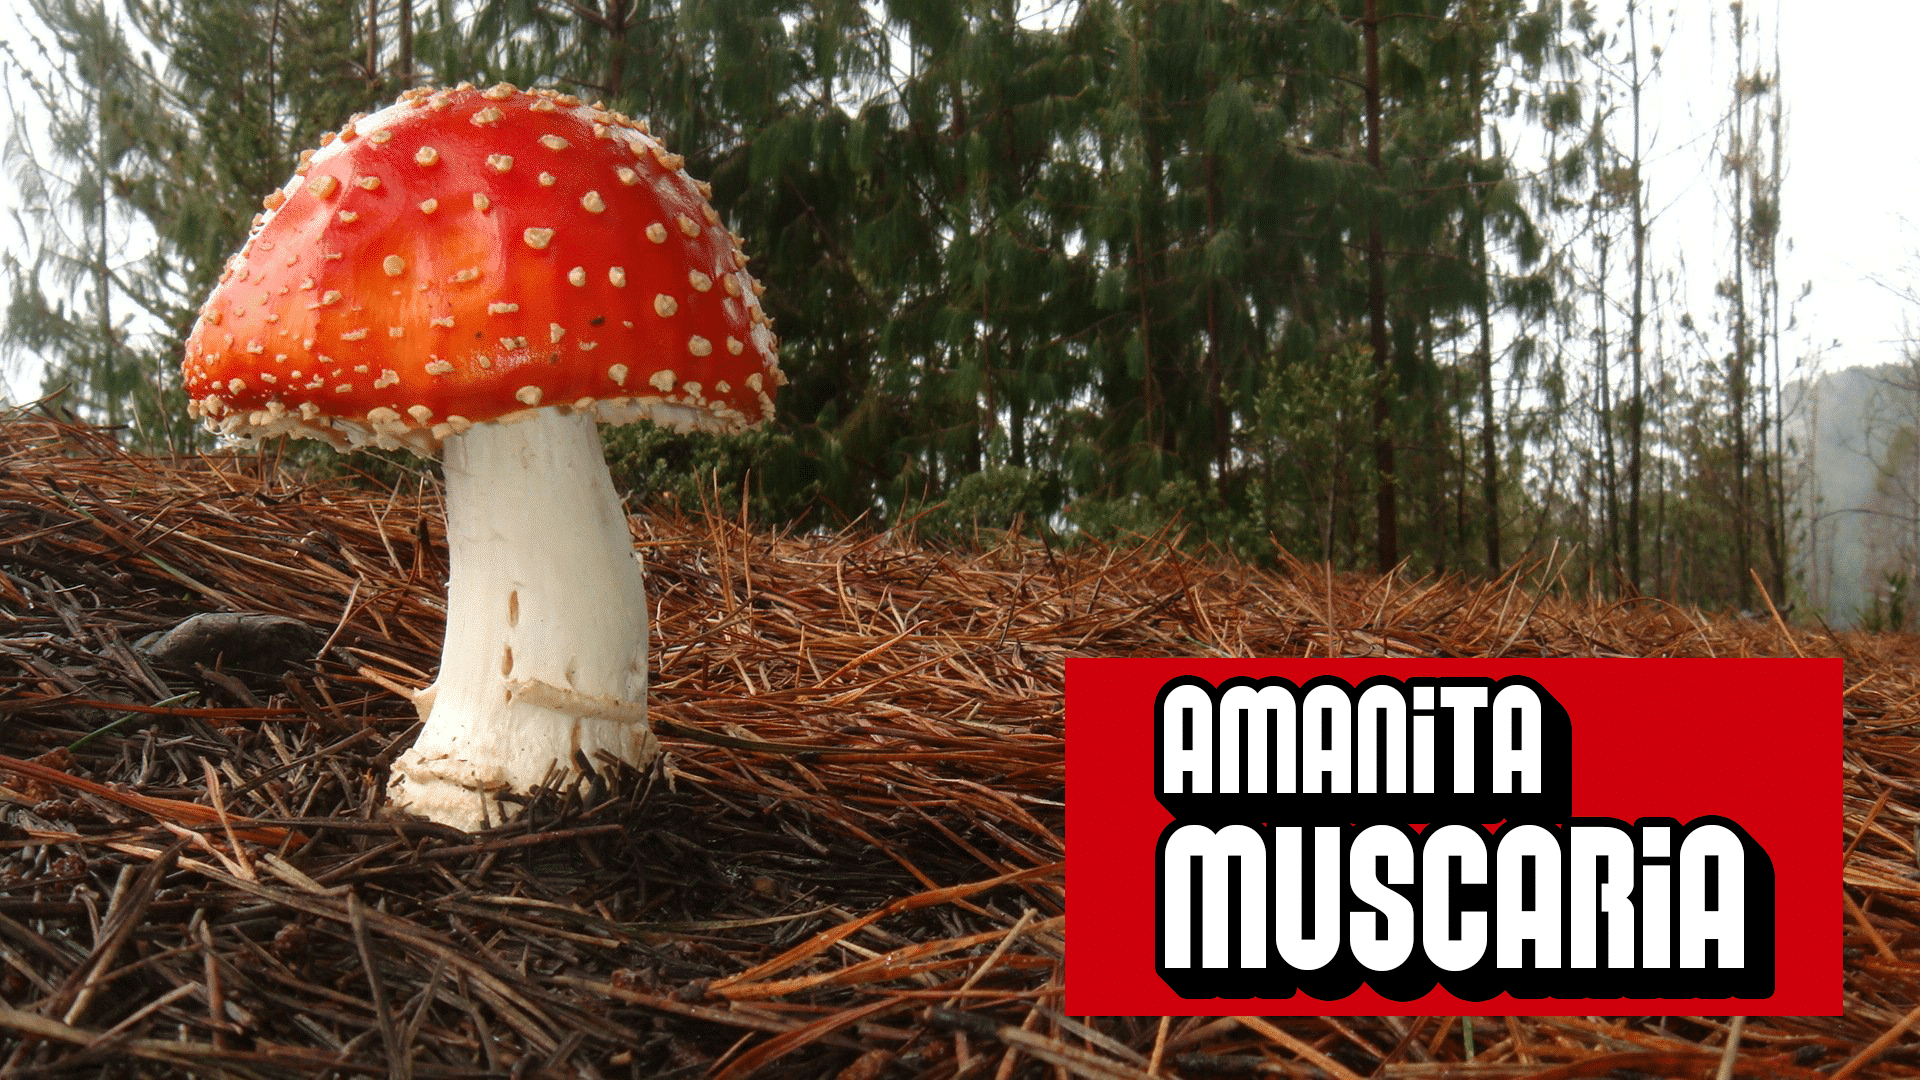 Super Mario Mushroom